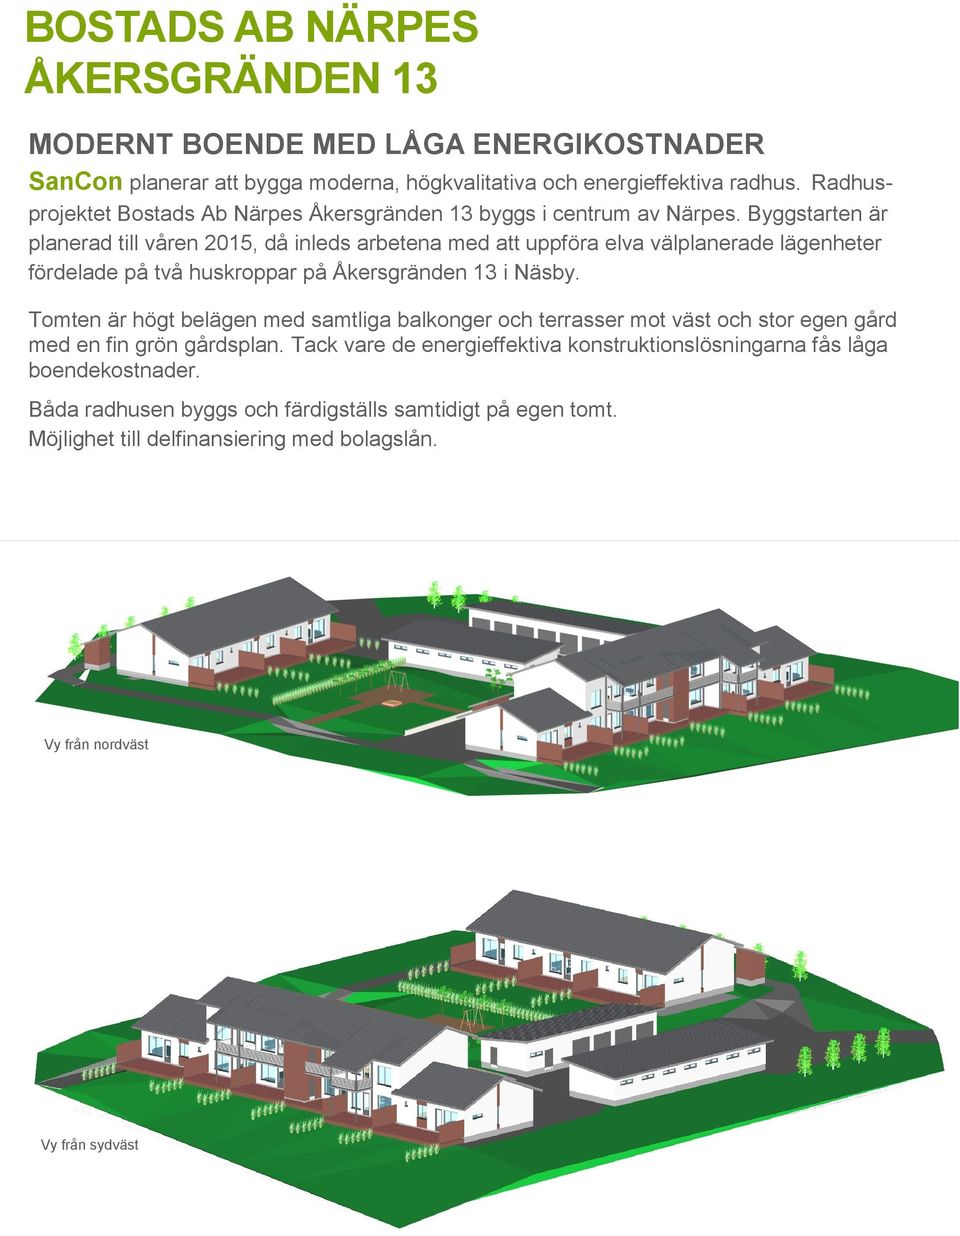 Byggstarten är planerad till våren 2015, då inleds arbetena med att uppföra elva välplanerade lägenheter fördelade på två huskroppar på Åkersgränden 13 i Näsby.